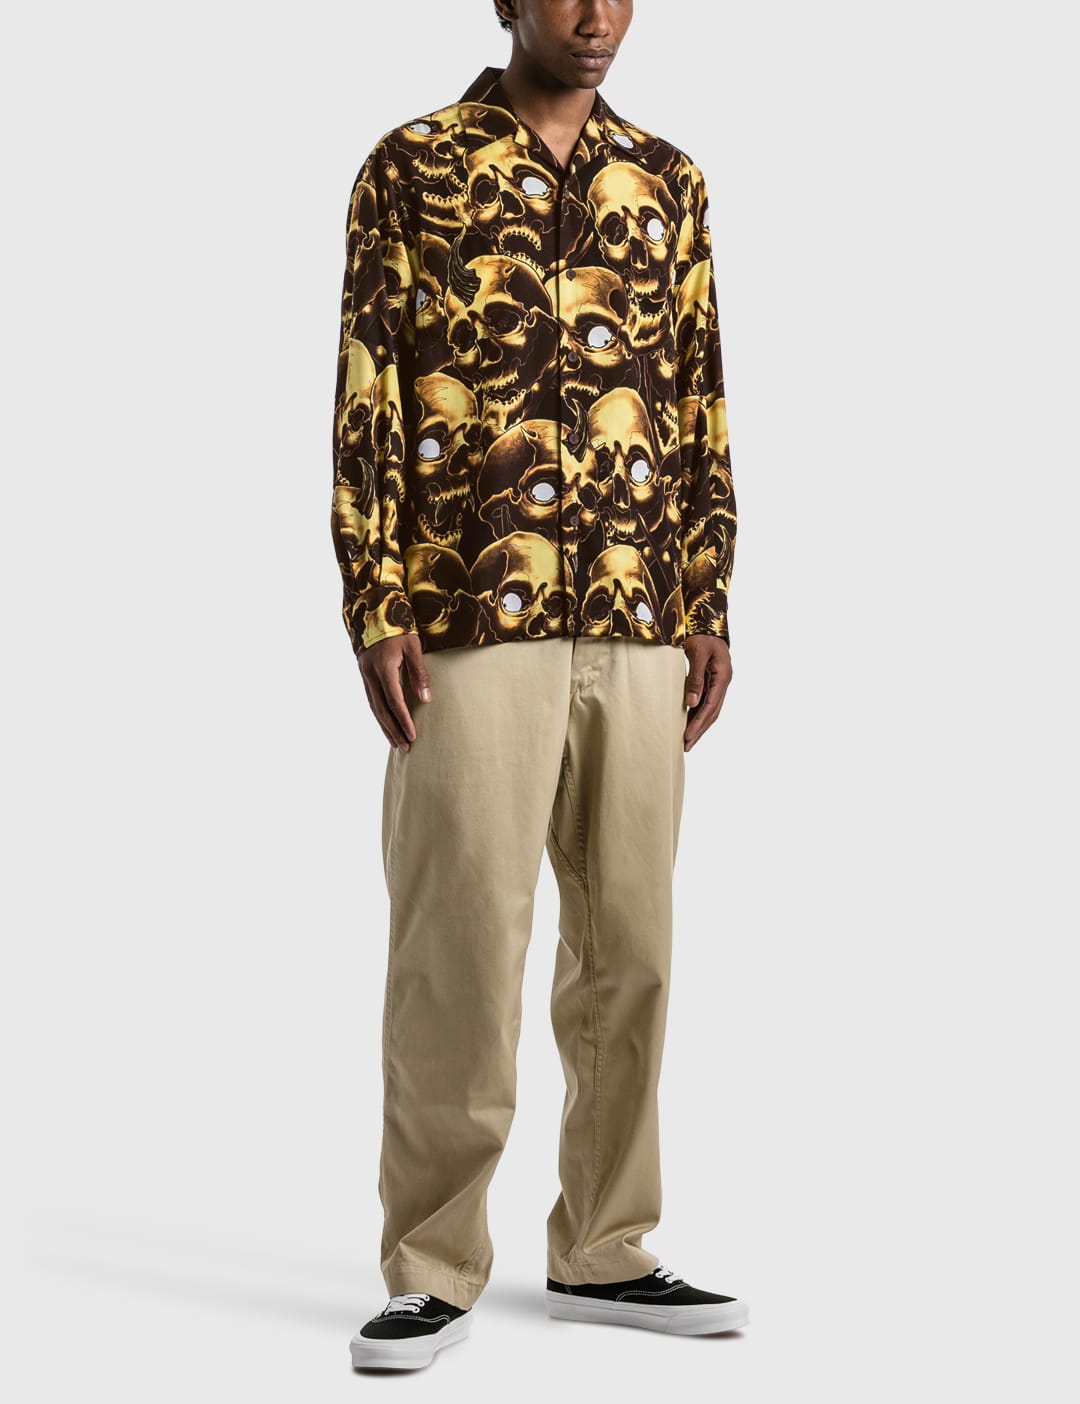 wackomaria Hawaiian shirt シャツ ショッピング早割 drjeffbray.com